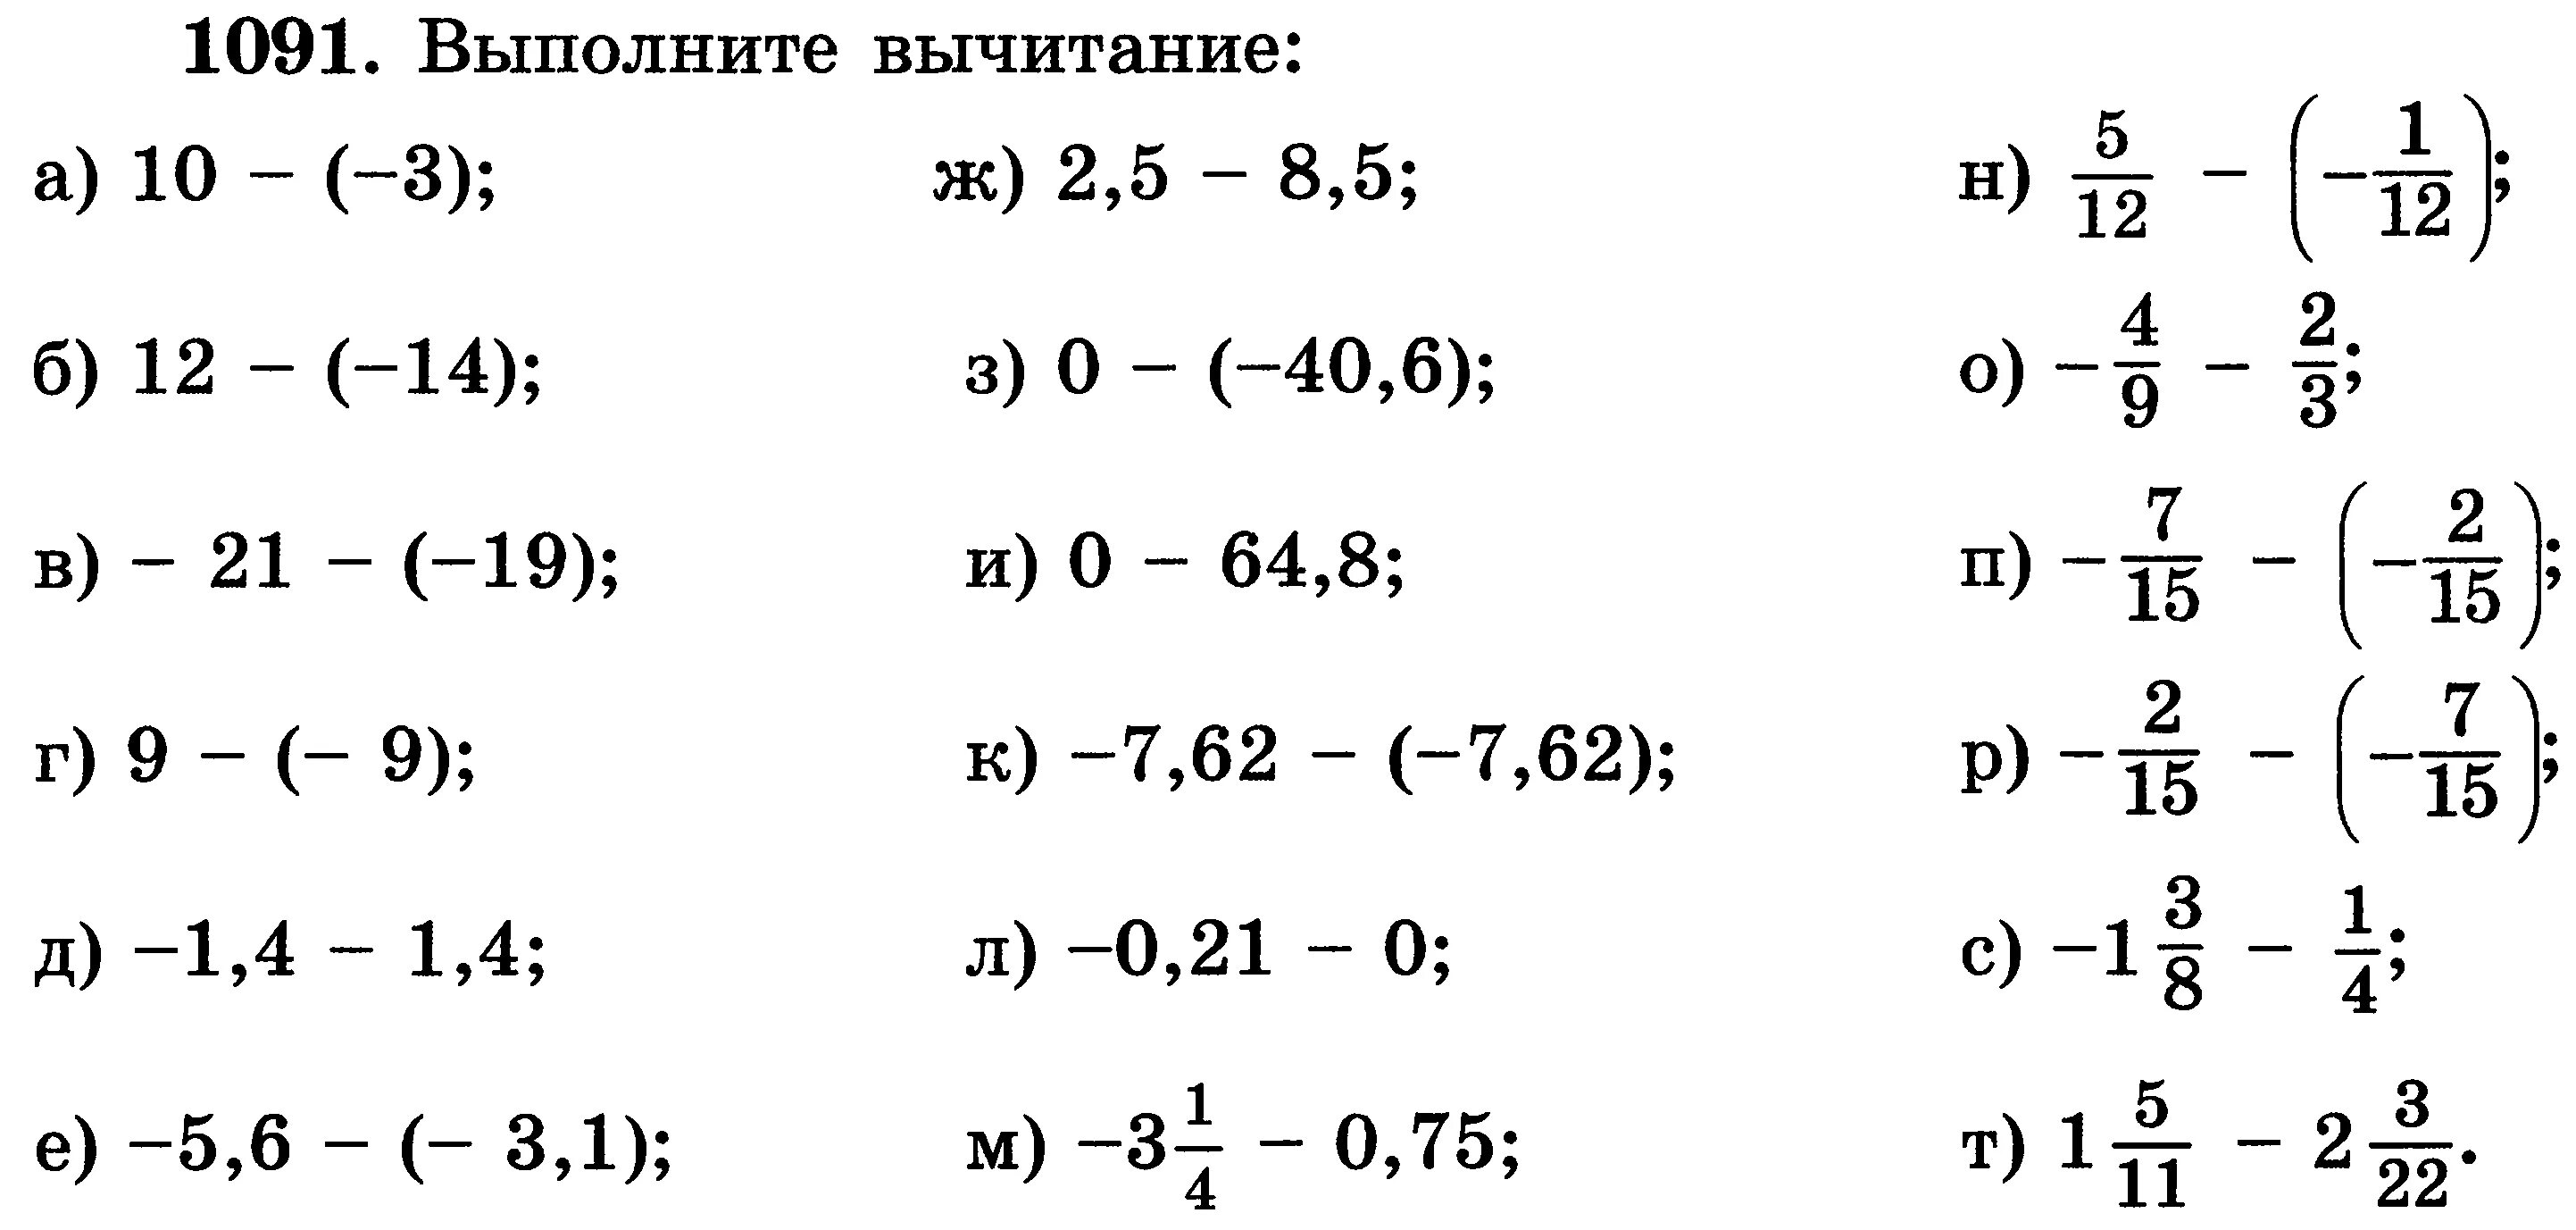 Математика 6 класс отрицательные числа задания. Slojeniye i vichitaniye Chisel s raznimi znakami. Сложение вычиитания чисел с разнымизнаками. Сложение отрицательных и положительных чисел примеры. Сложение и вычитание рациональных чисел примеры.